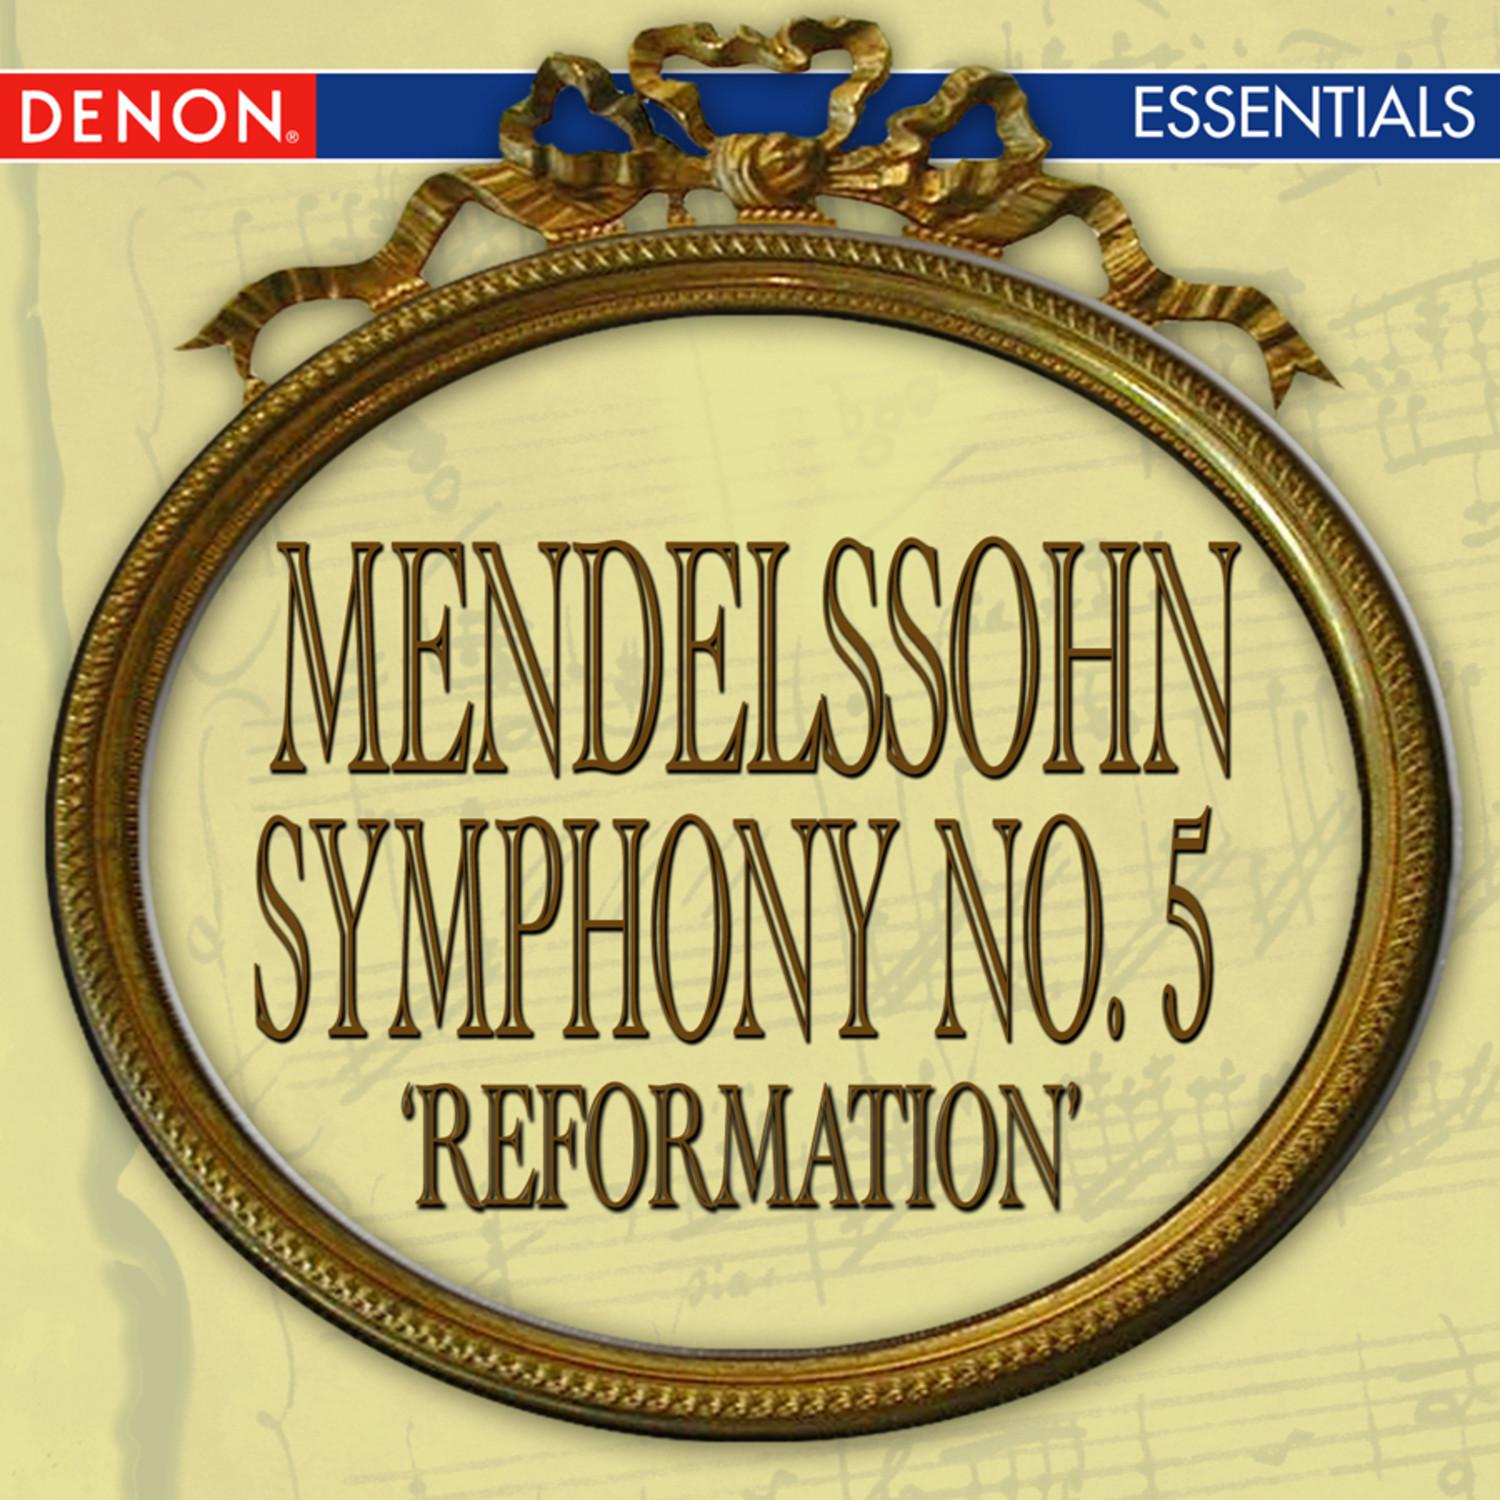 Symphony No. 5 in D Major, Op. 107 "Reformation": I. Andante - Allegro con fuoco